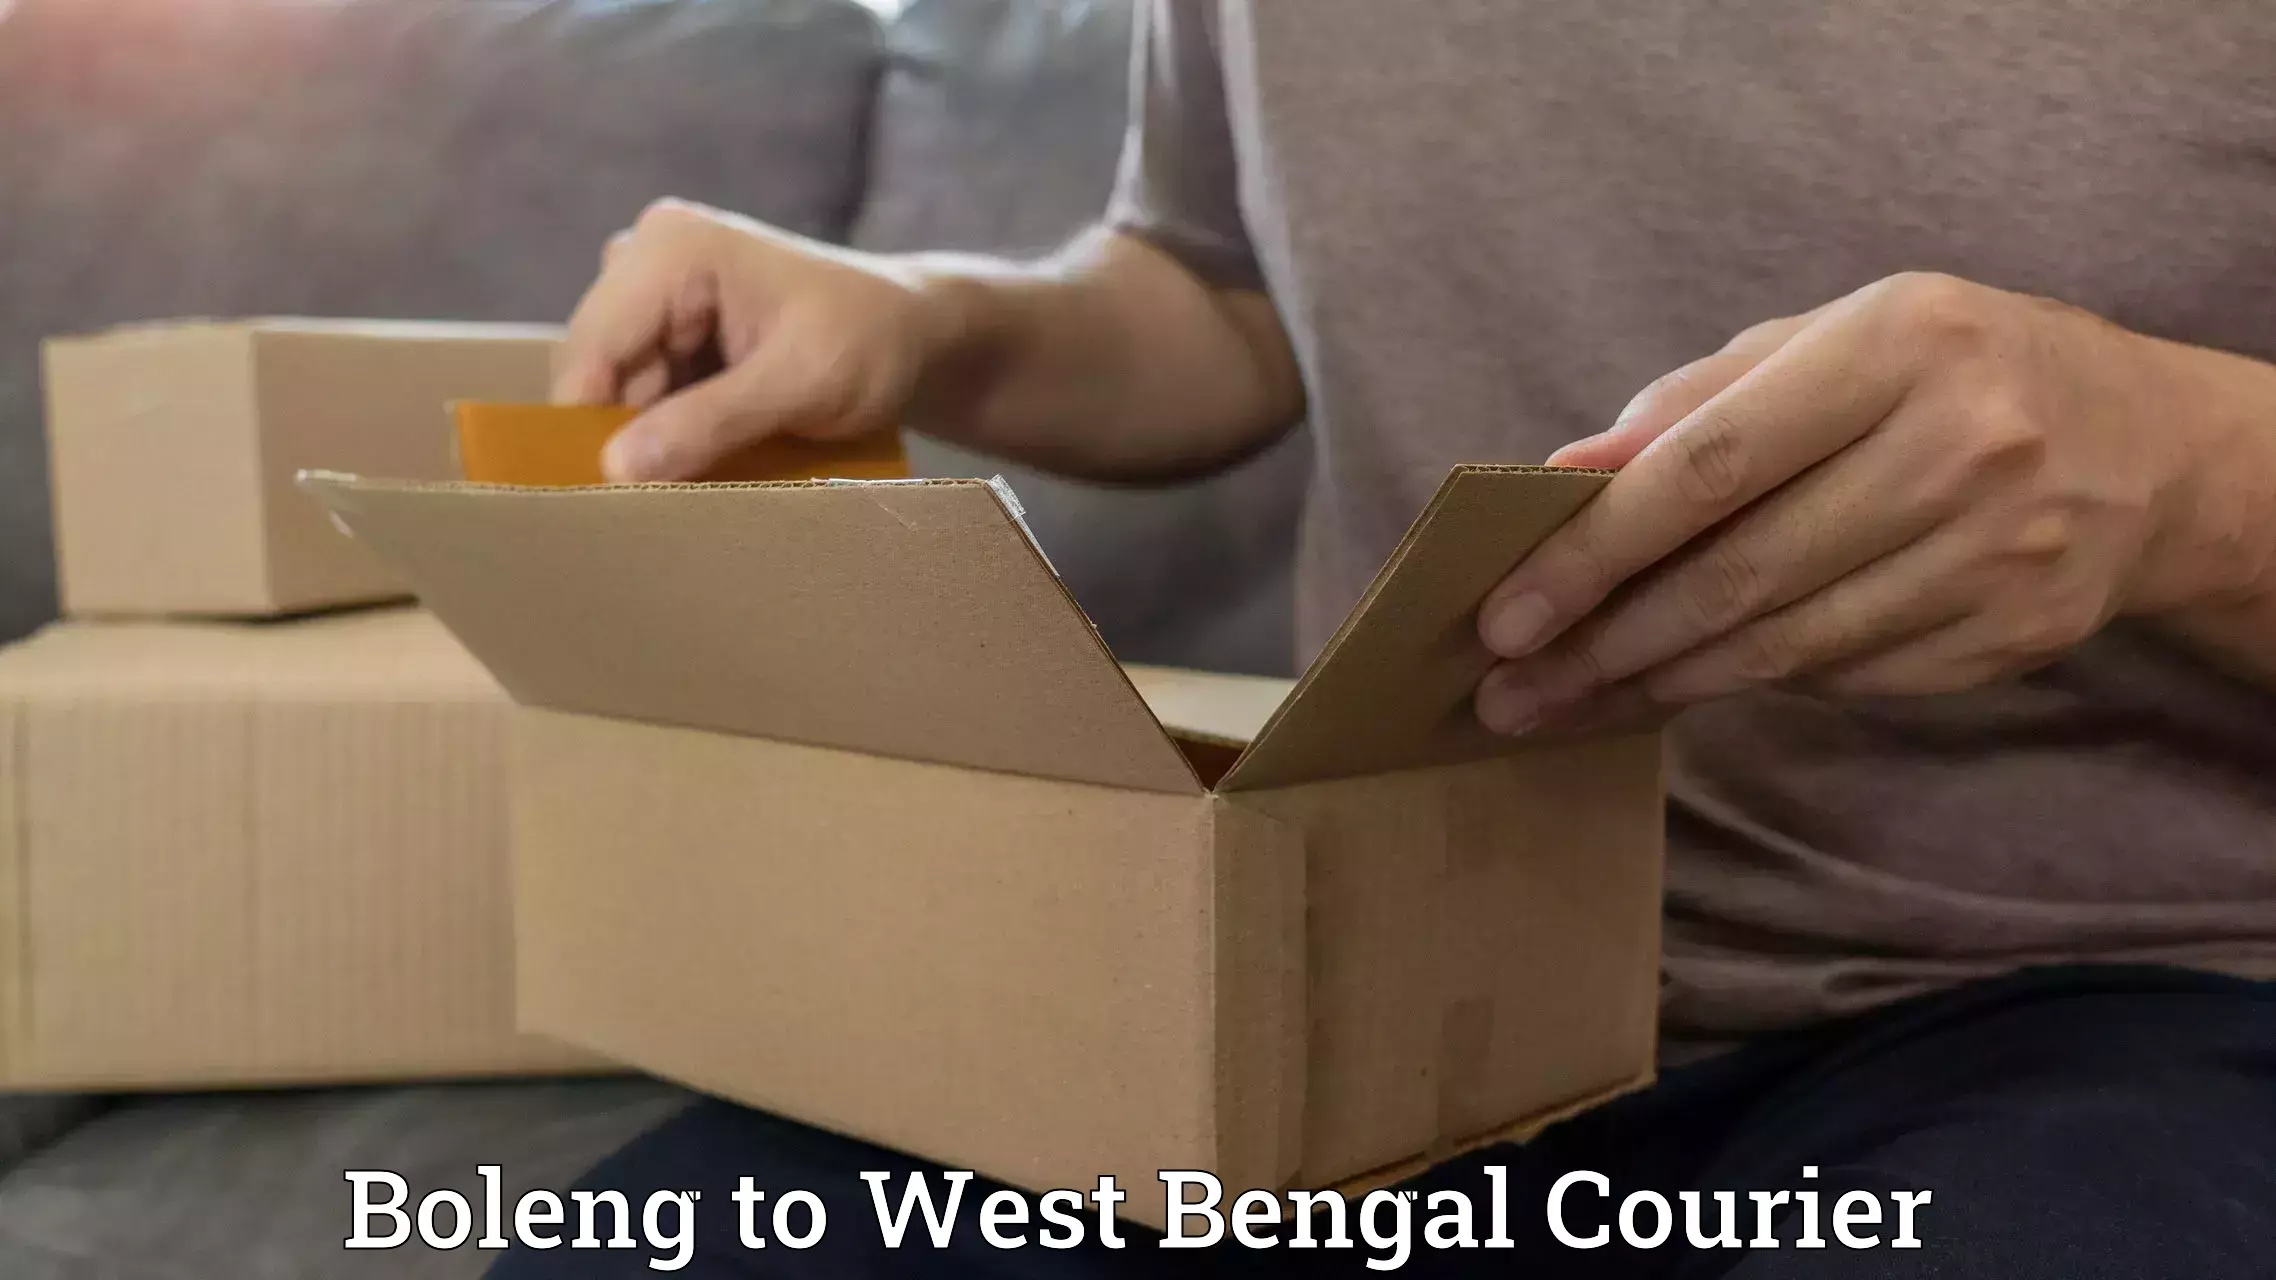 Easy access courier services Boleng to Sehara Bazar